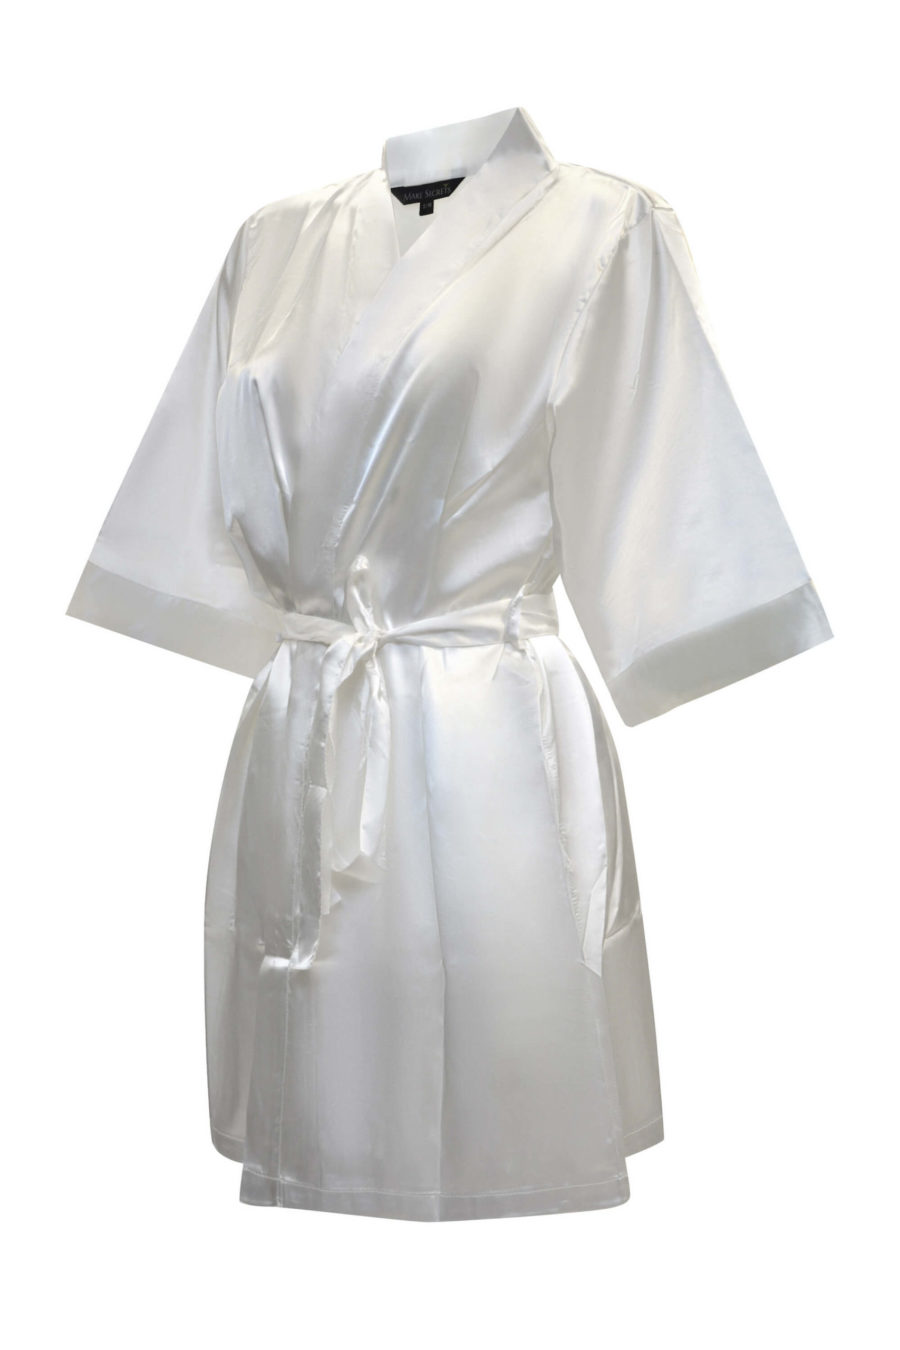 Sidenmorgonrock med bride print - Make Secrets lyxiga underkläder